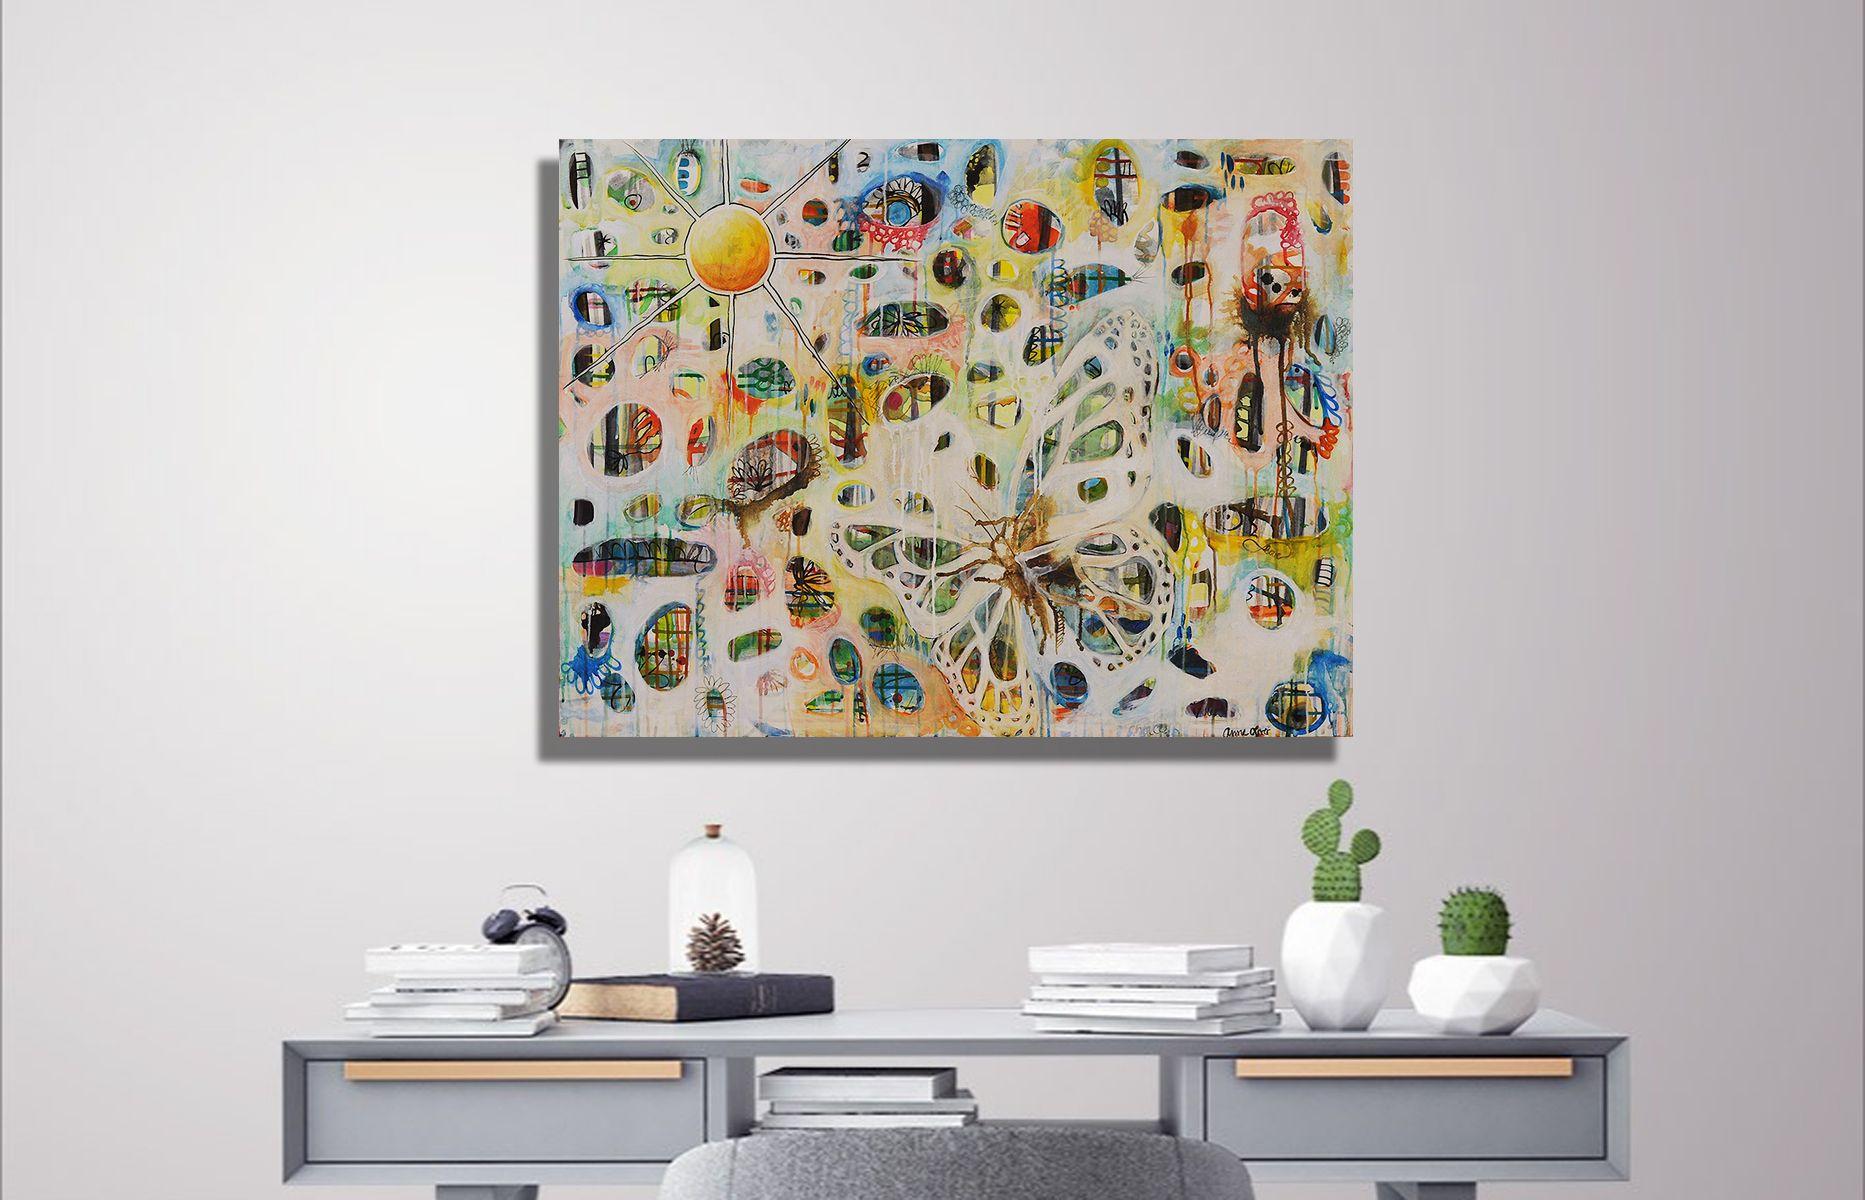 « We Are One, You and I, the Trees and the Butterfly » (Tu es moi, les arbres et le papillon), peinture à l'acrylique sur toile - Painting de Anne Oliver